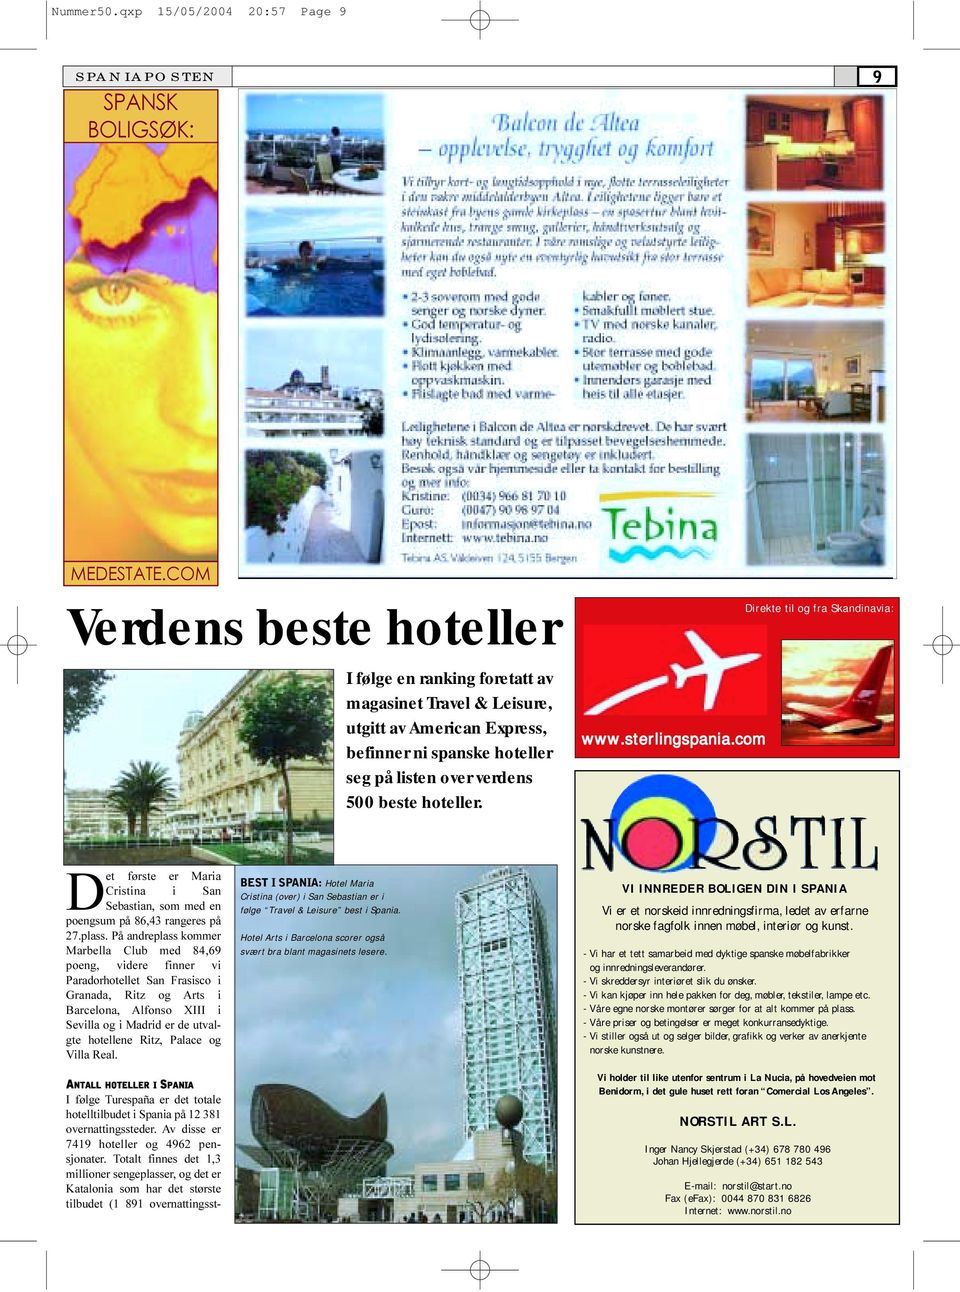 seg på listen over verdens 500 beste hoteller. www.sterlingspania.